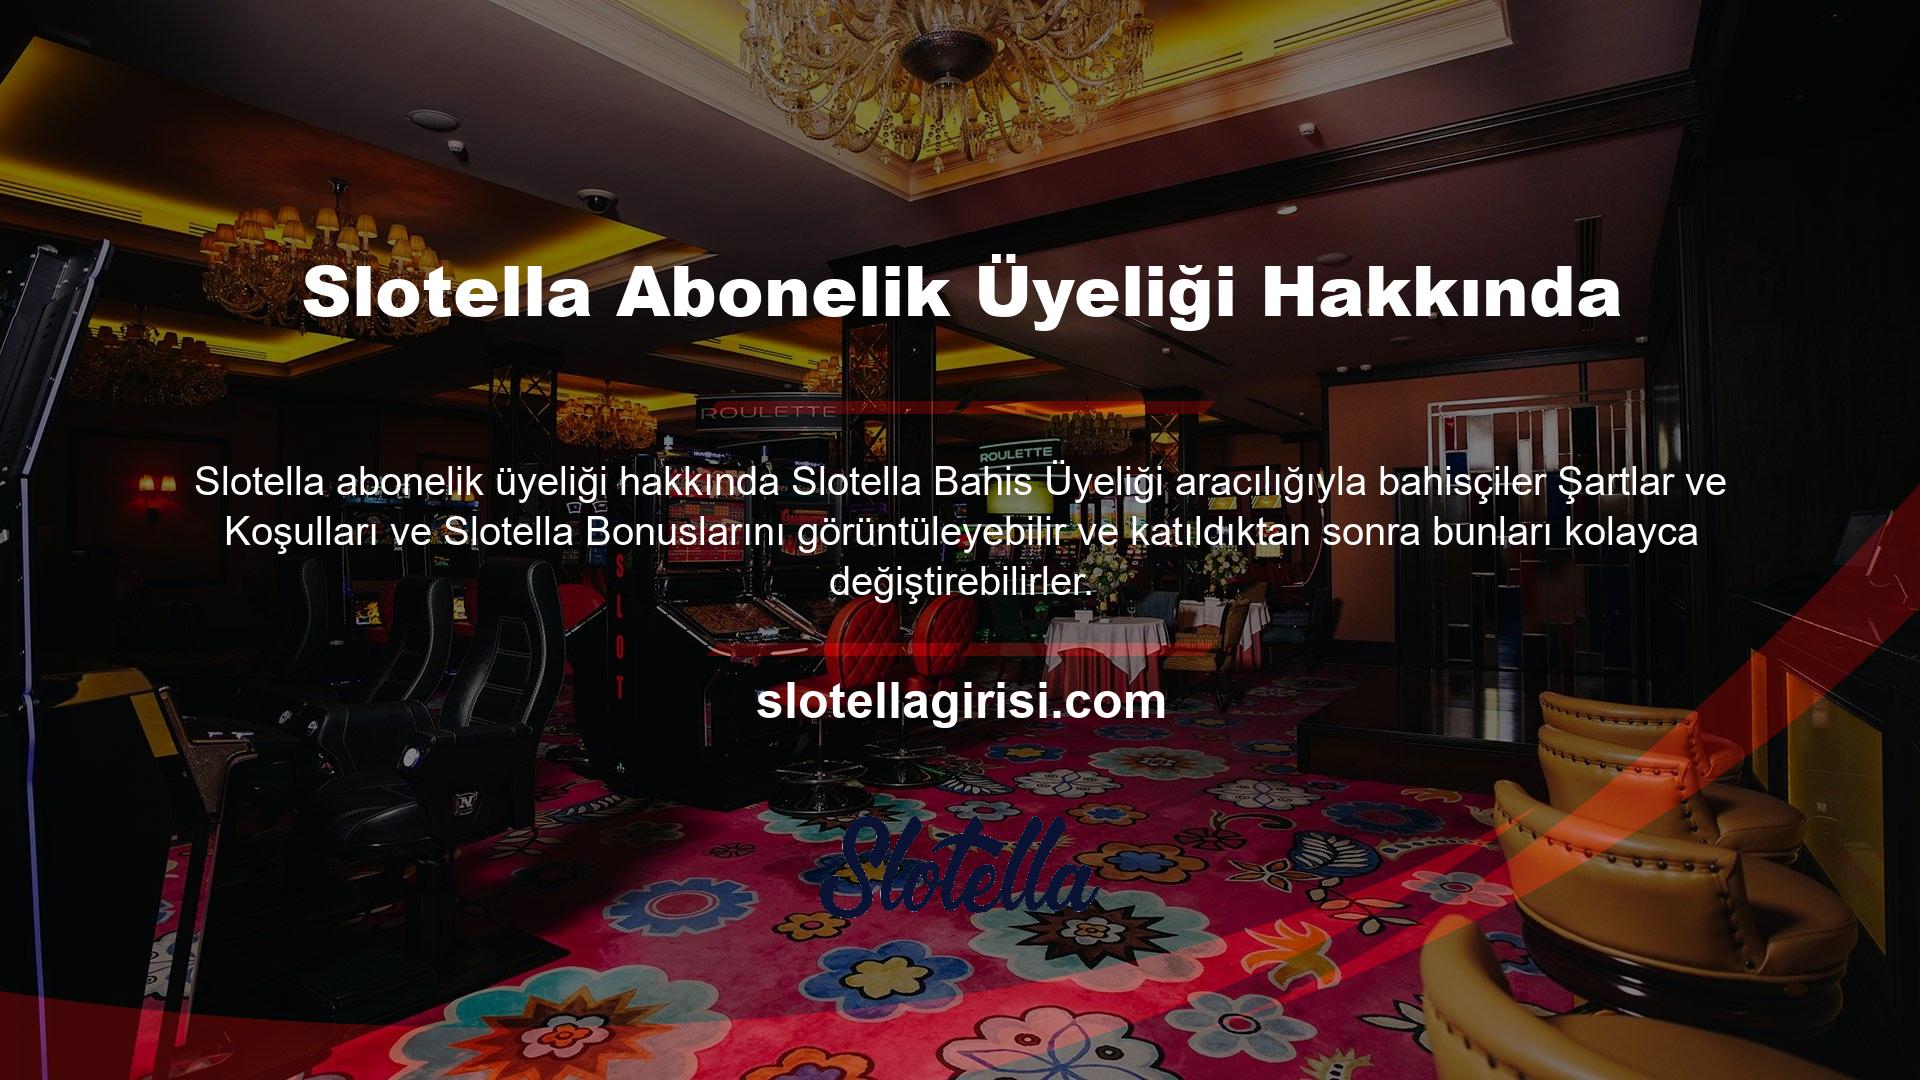 Slotella bunun bilincinde olup mevcut adresi üzerinden kullanıcılarına çeşitli bonuslar ve promosyonlar sunmaktadır